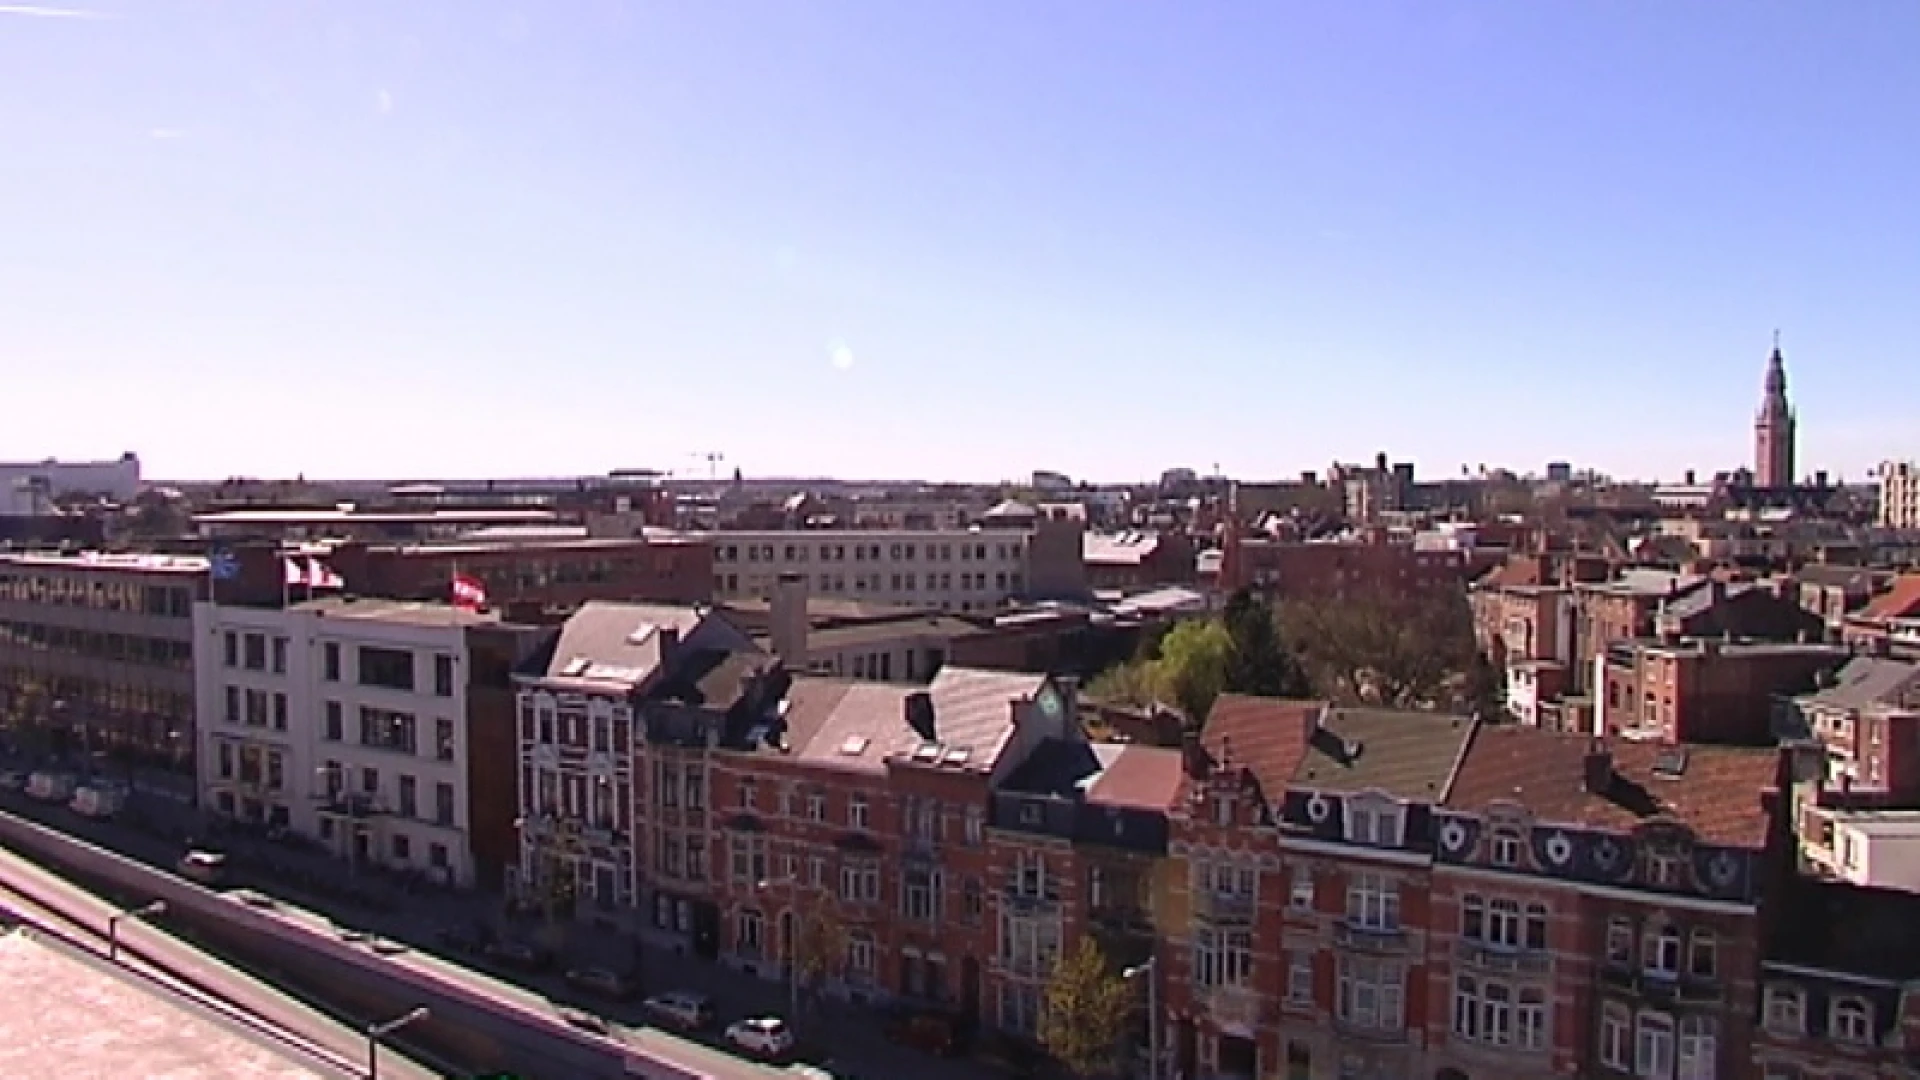 Welkom in Leuven, de provinciehoofdplaats met de duurste huizen